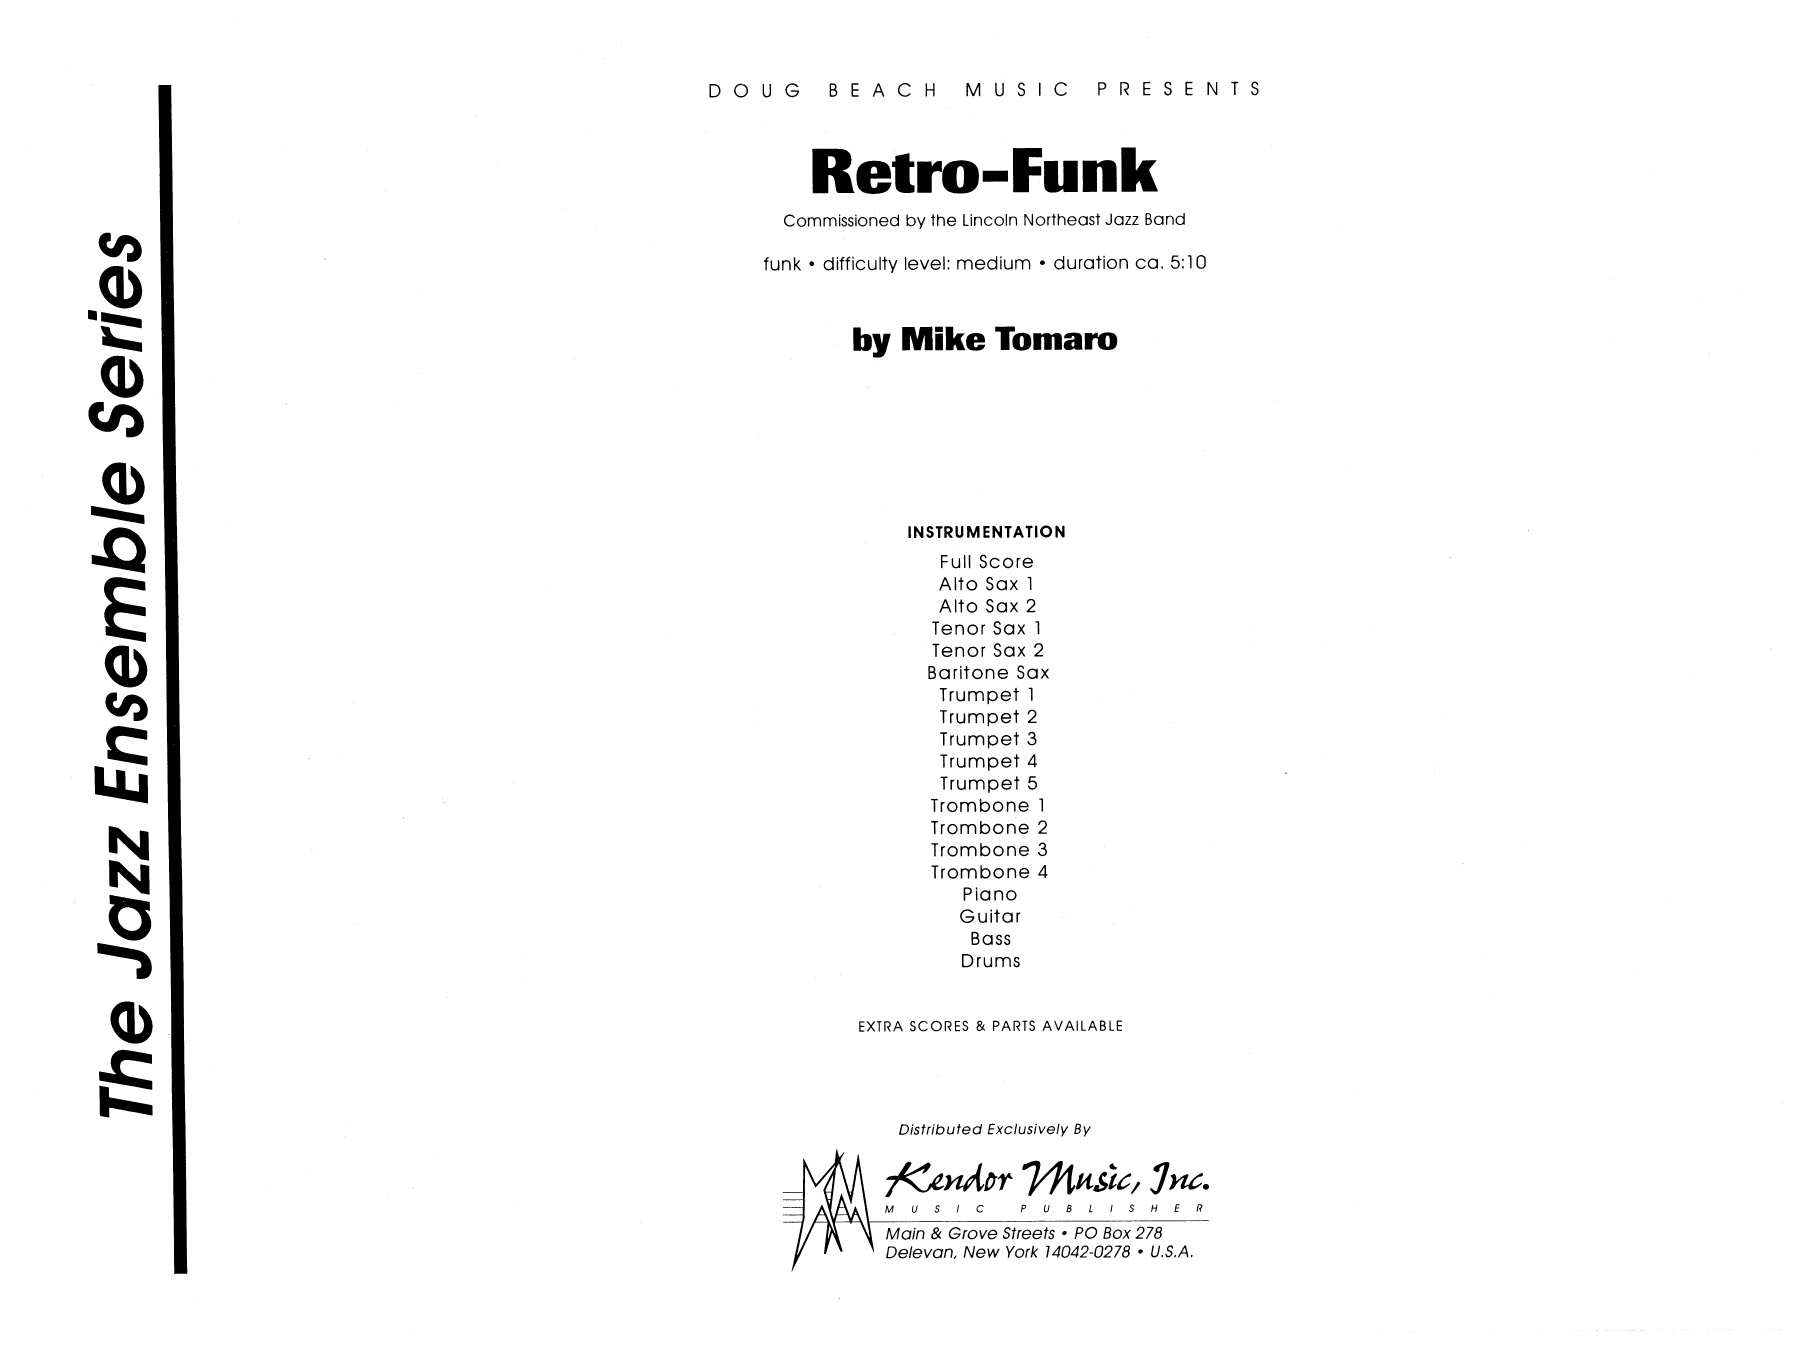 Download Mike Tomaro Retro-Funk - Full Score Sheet Music